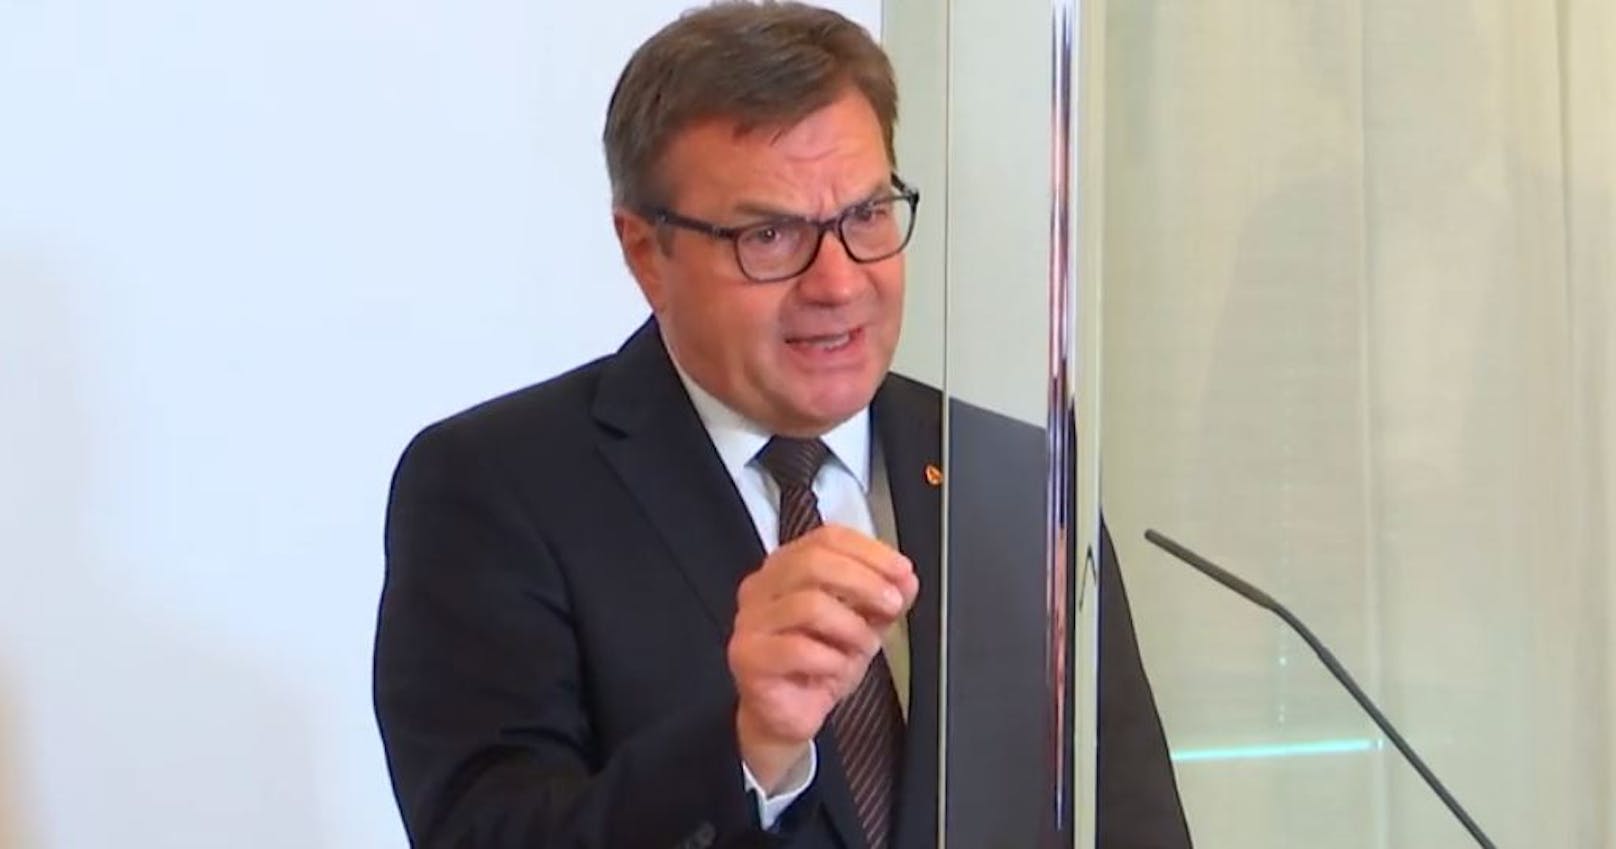 Tirols Landeshauptmann Günther Platter unterstützt die Maßnahmen der Bundesregierung